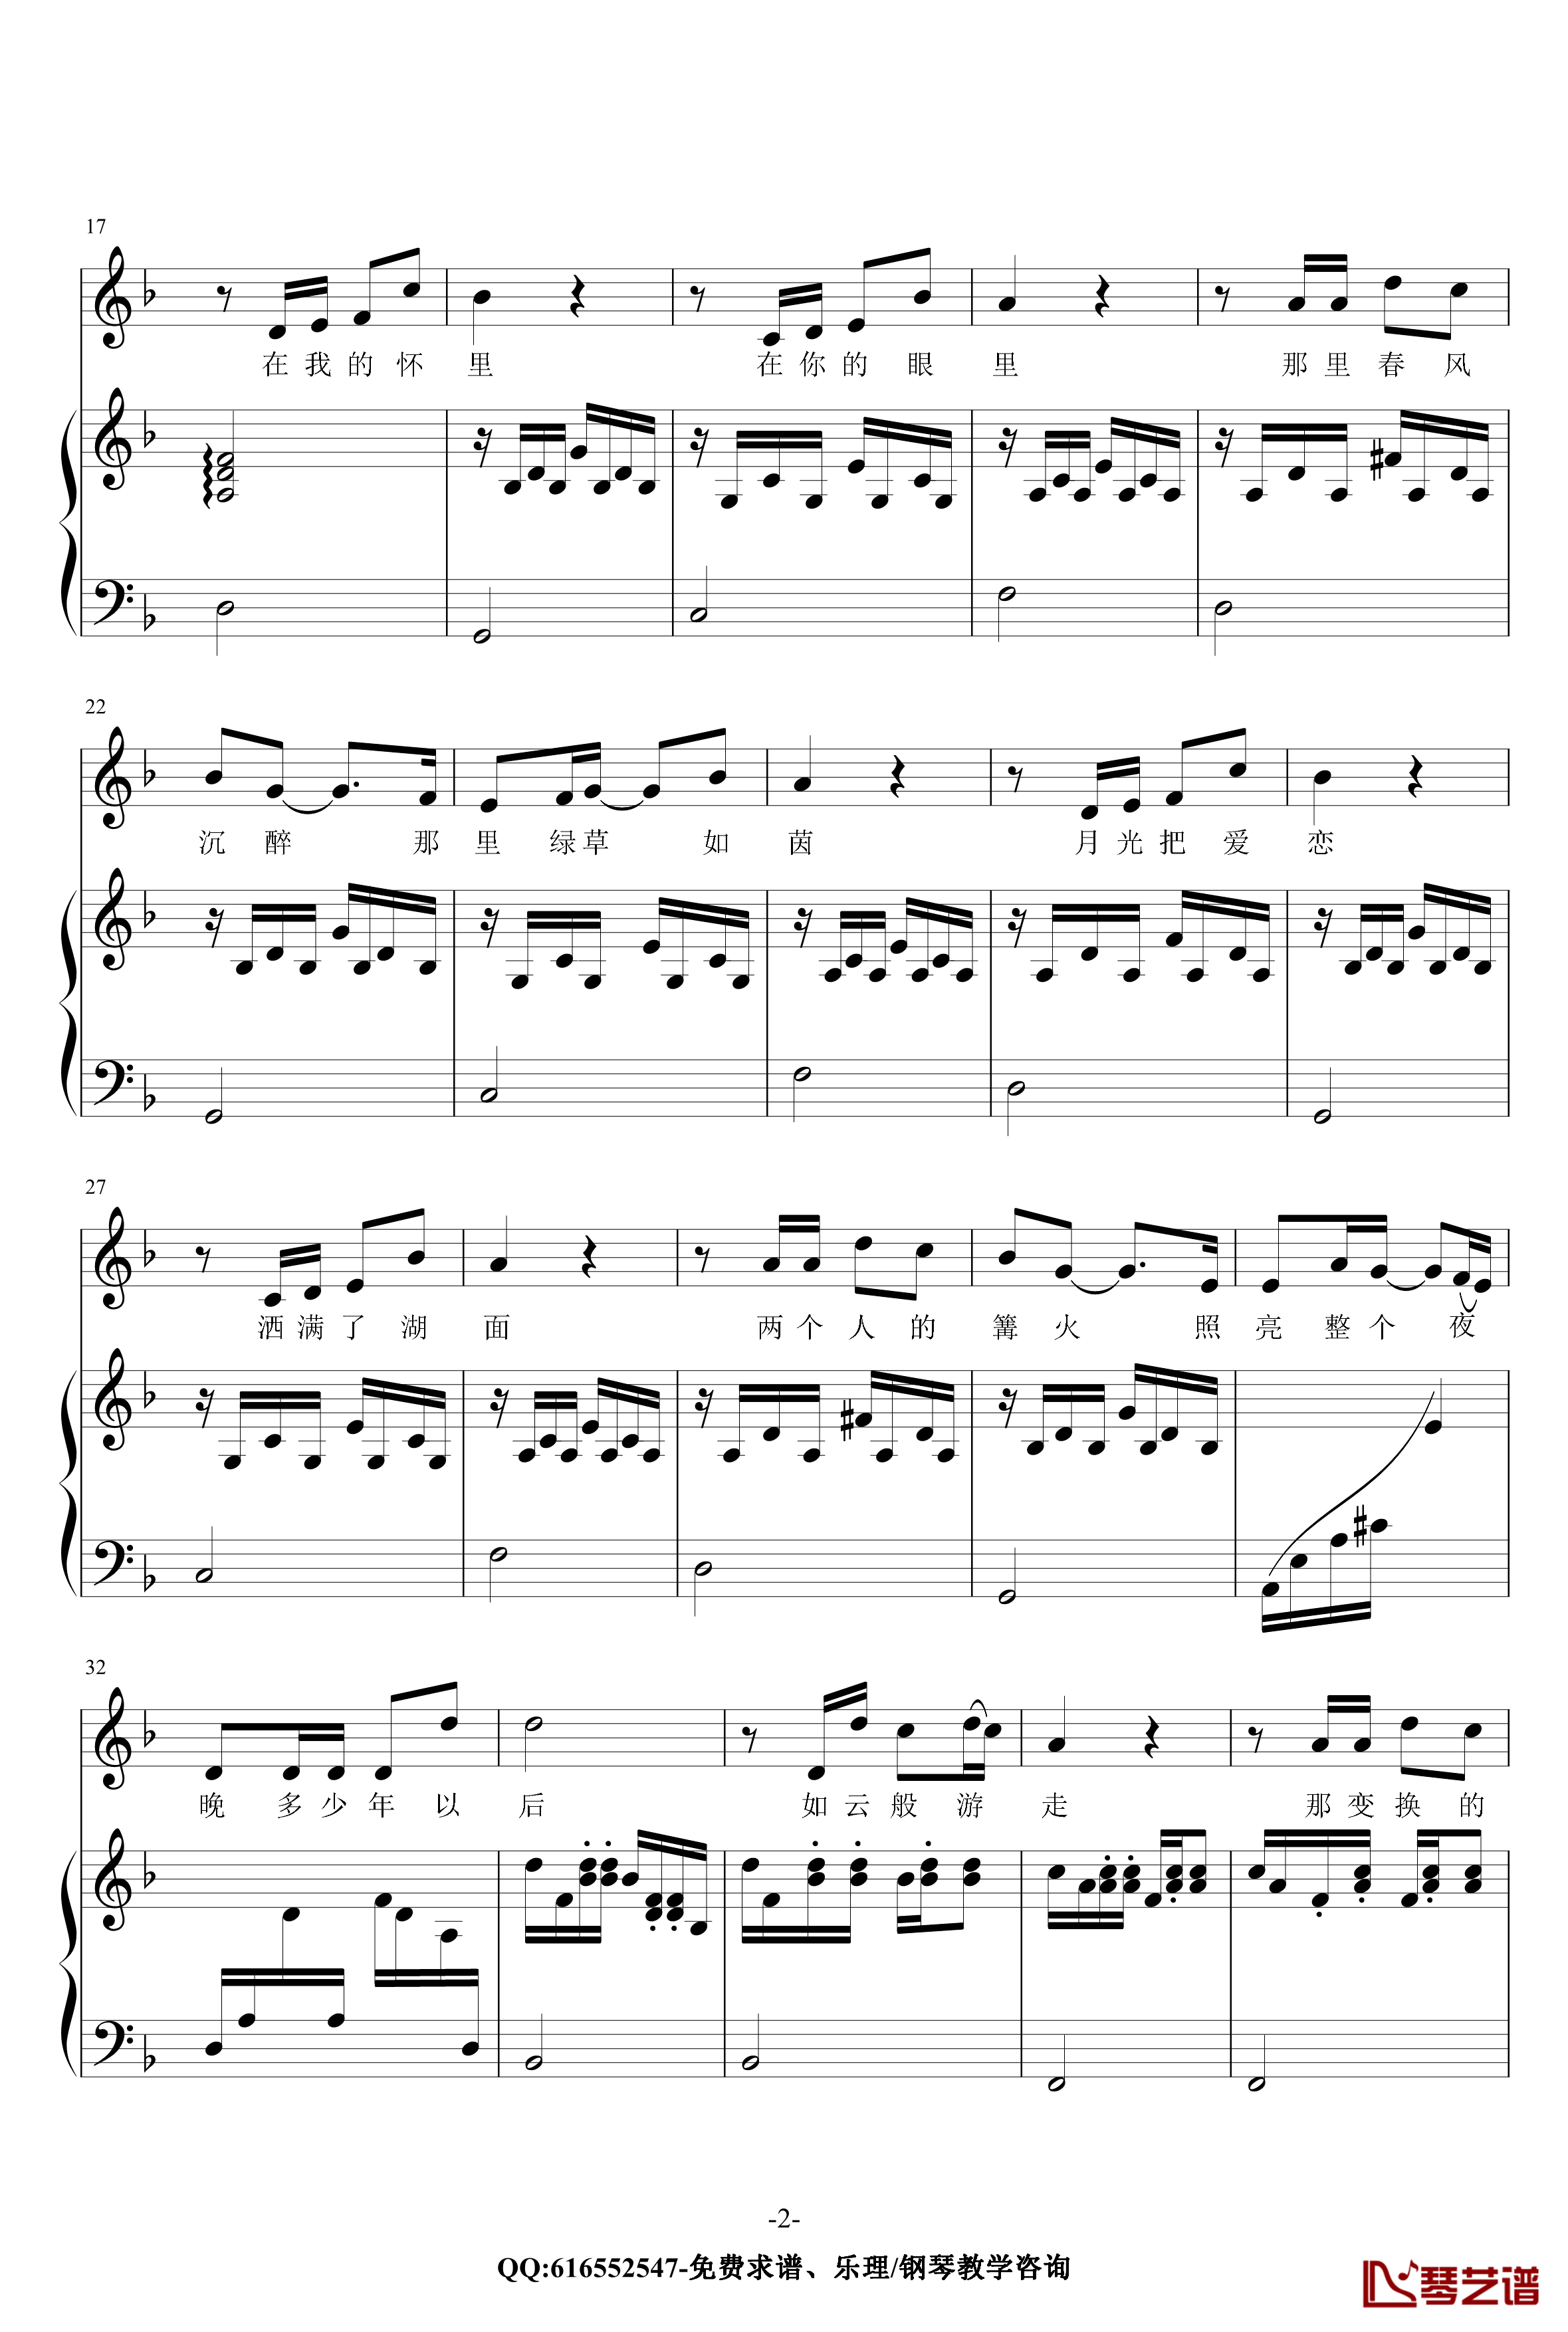 贝加尔湖畔钢琴谱-金龙鱼原声伴奏版170616-李健2